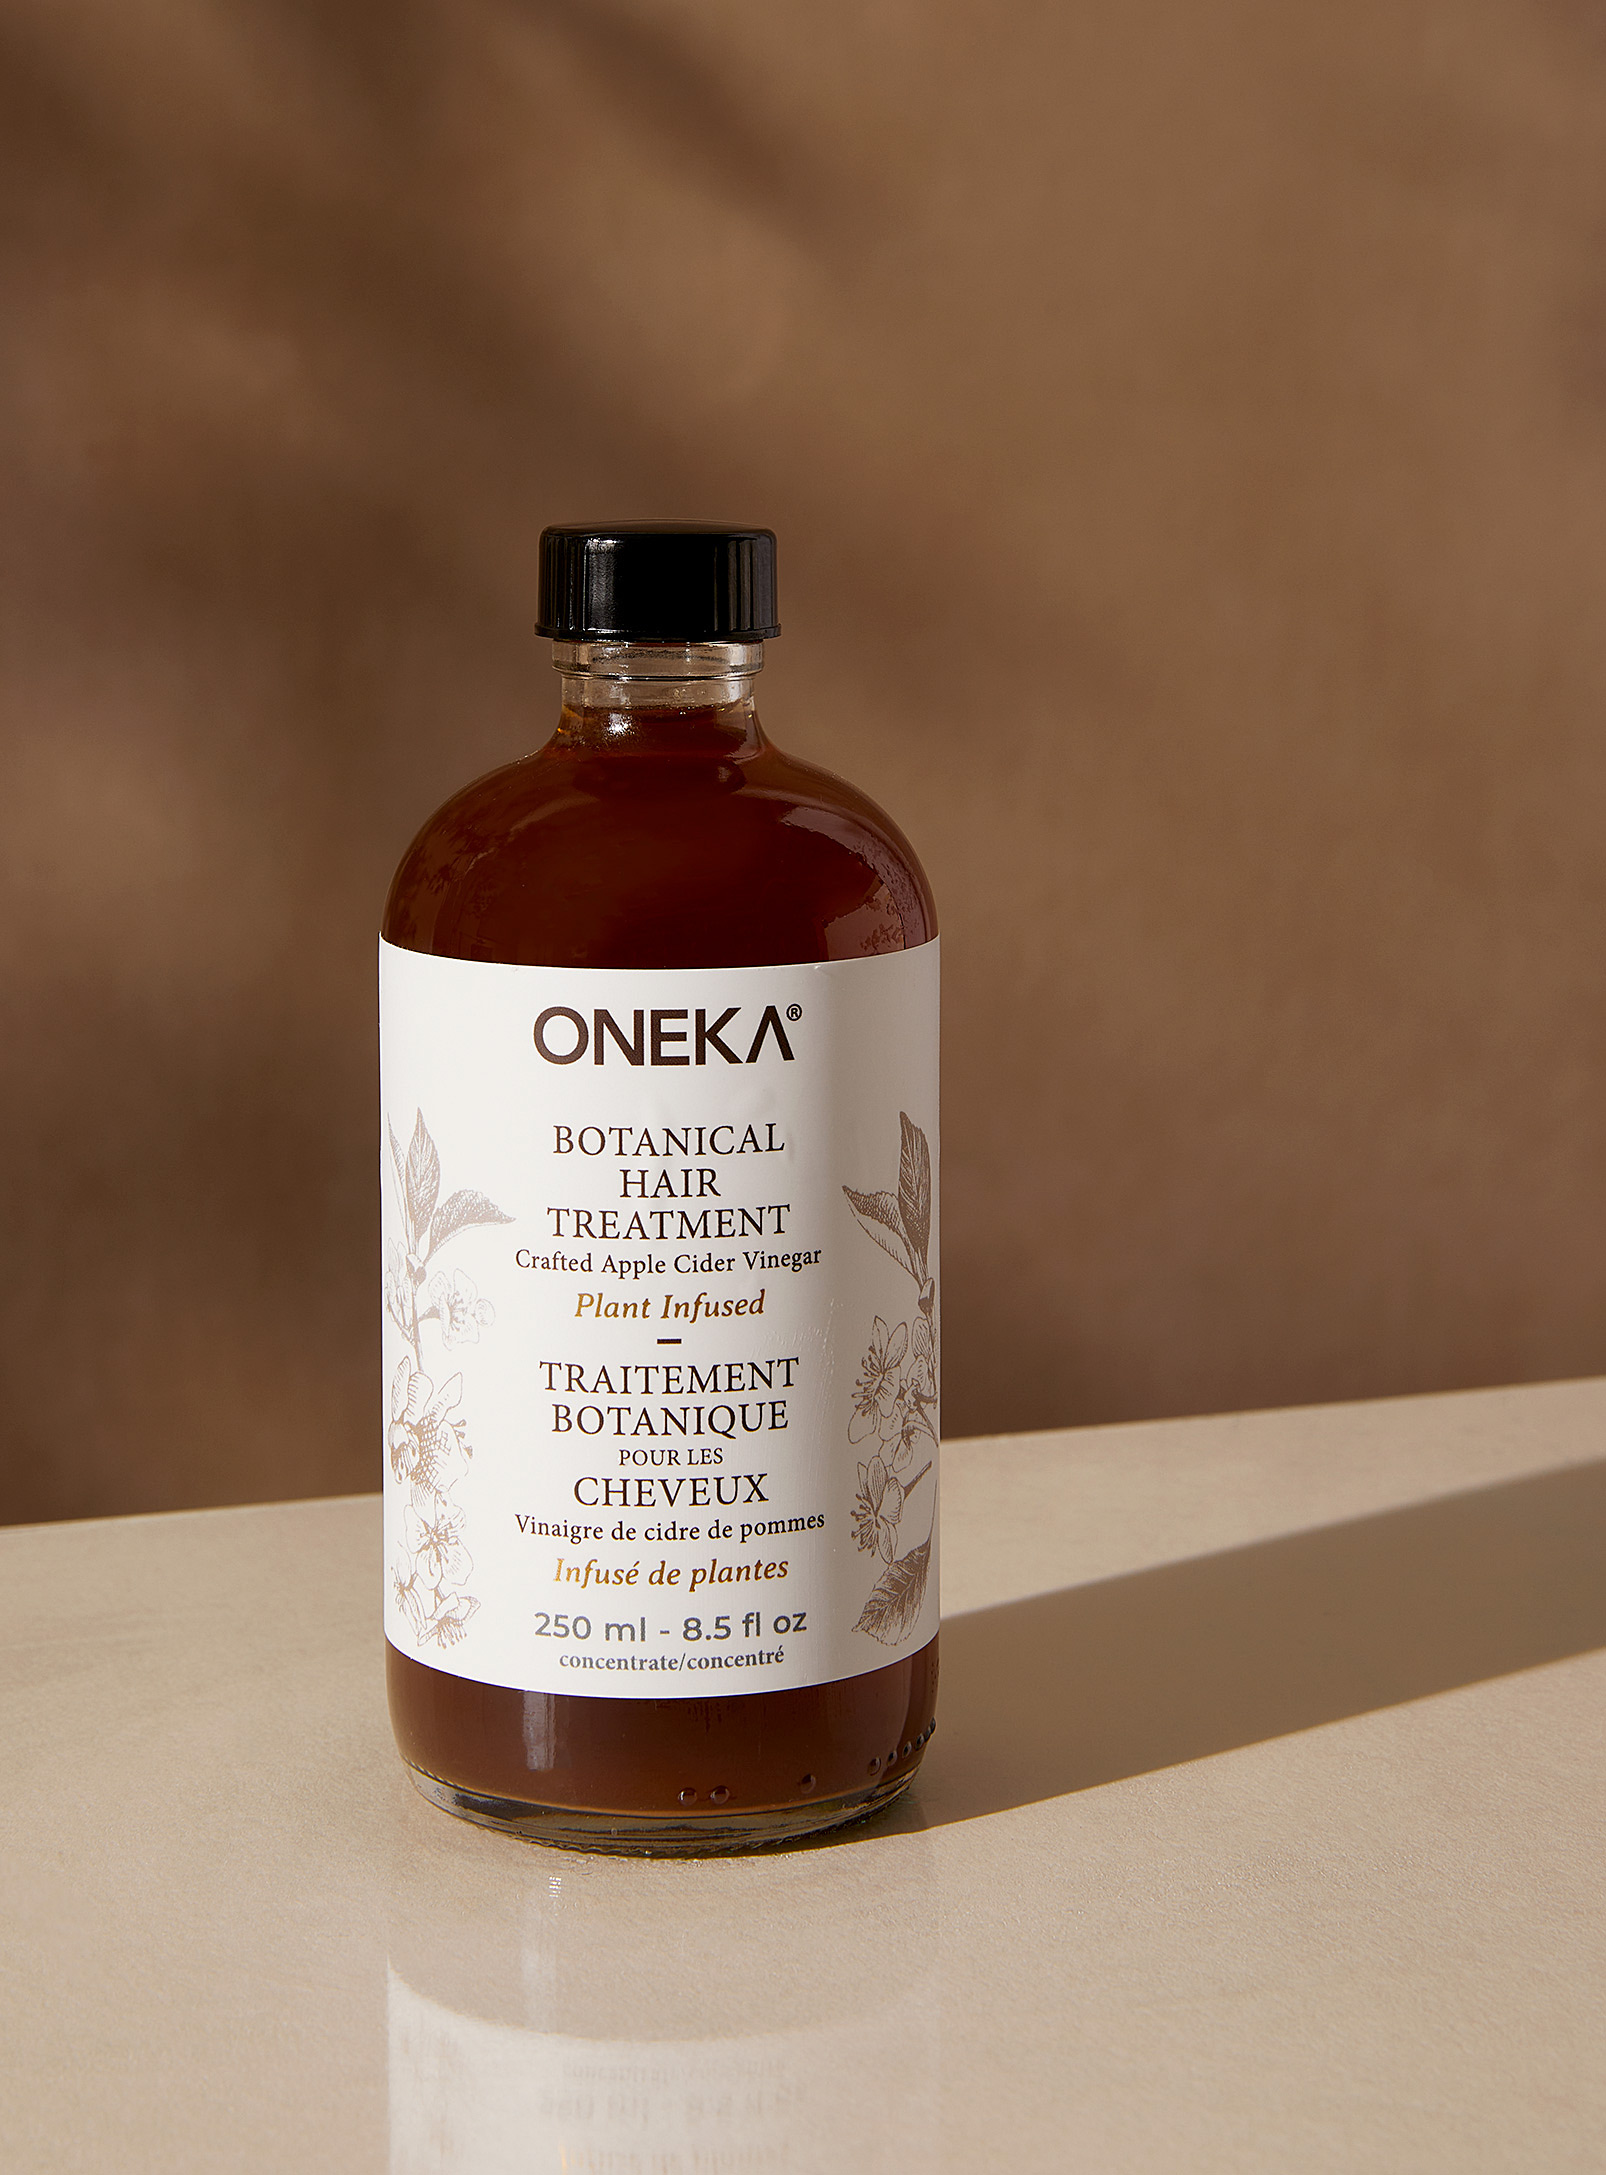 Oneka - Le traitement pour les cheveux au vinaigre de cidre